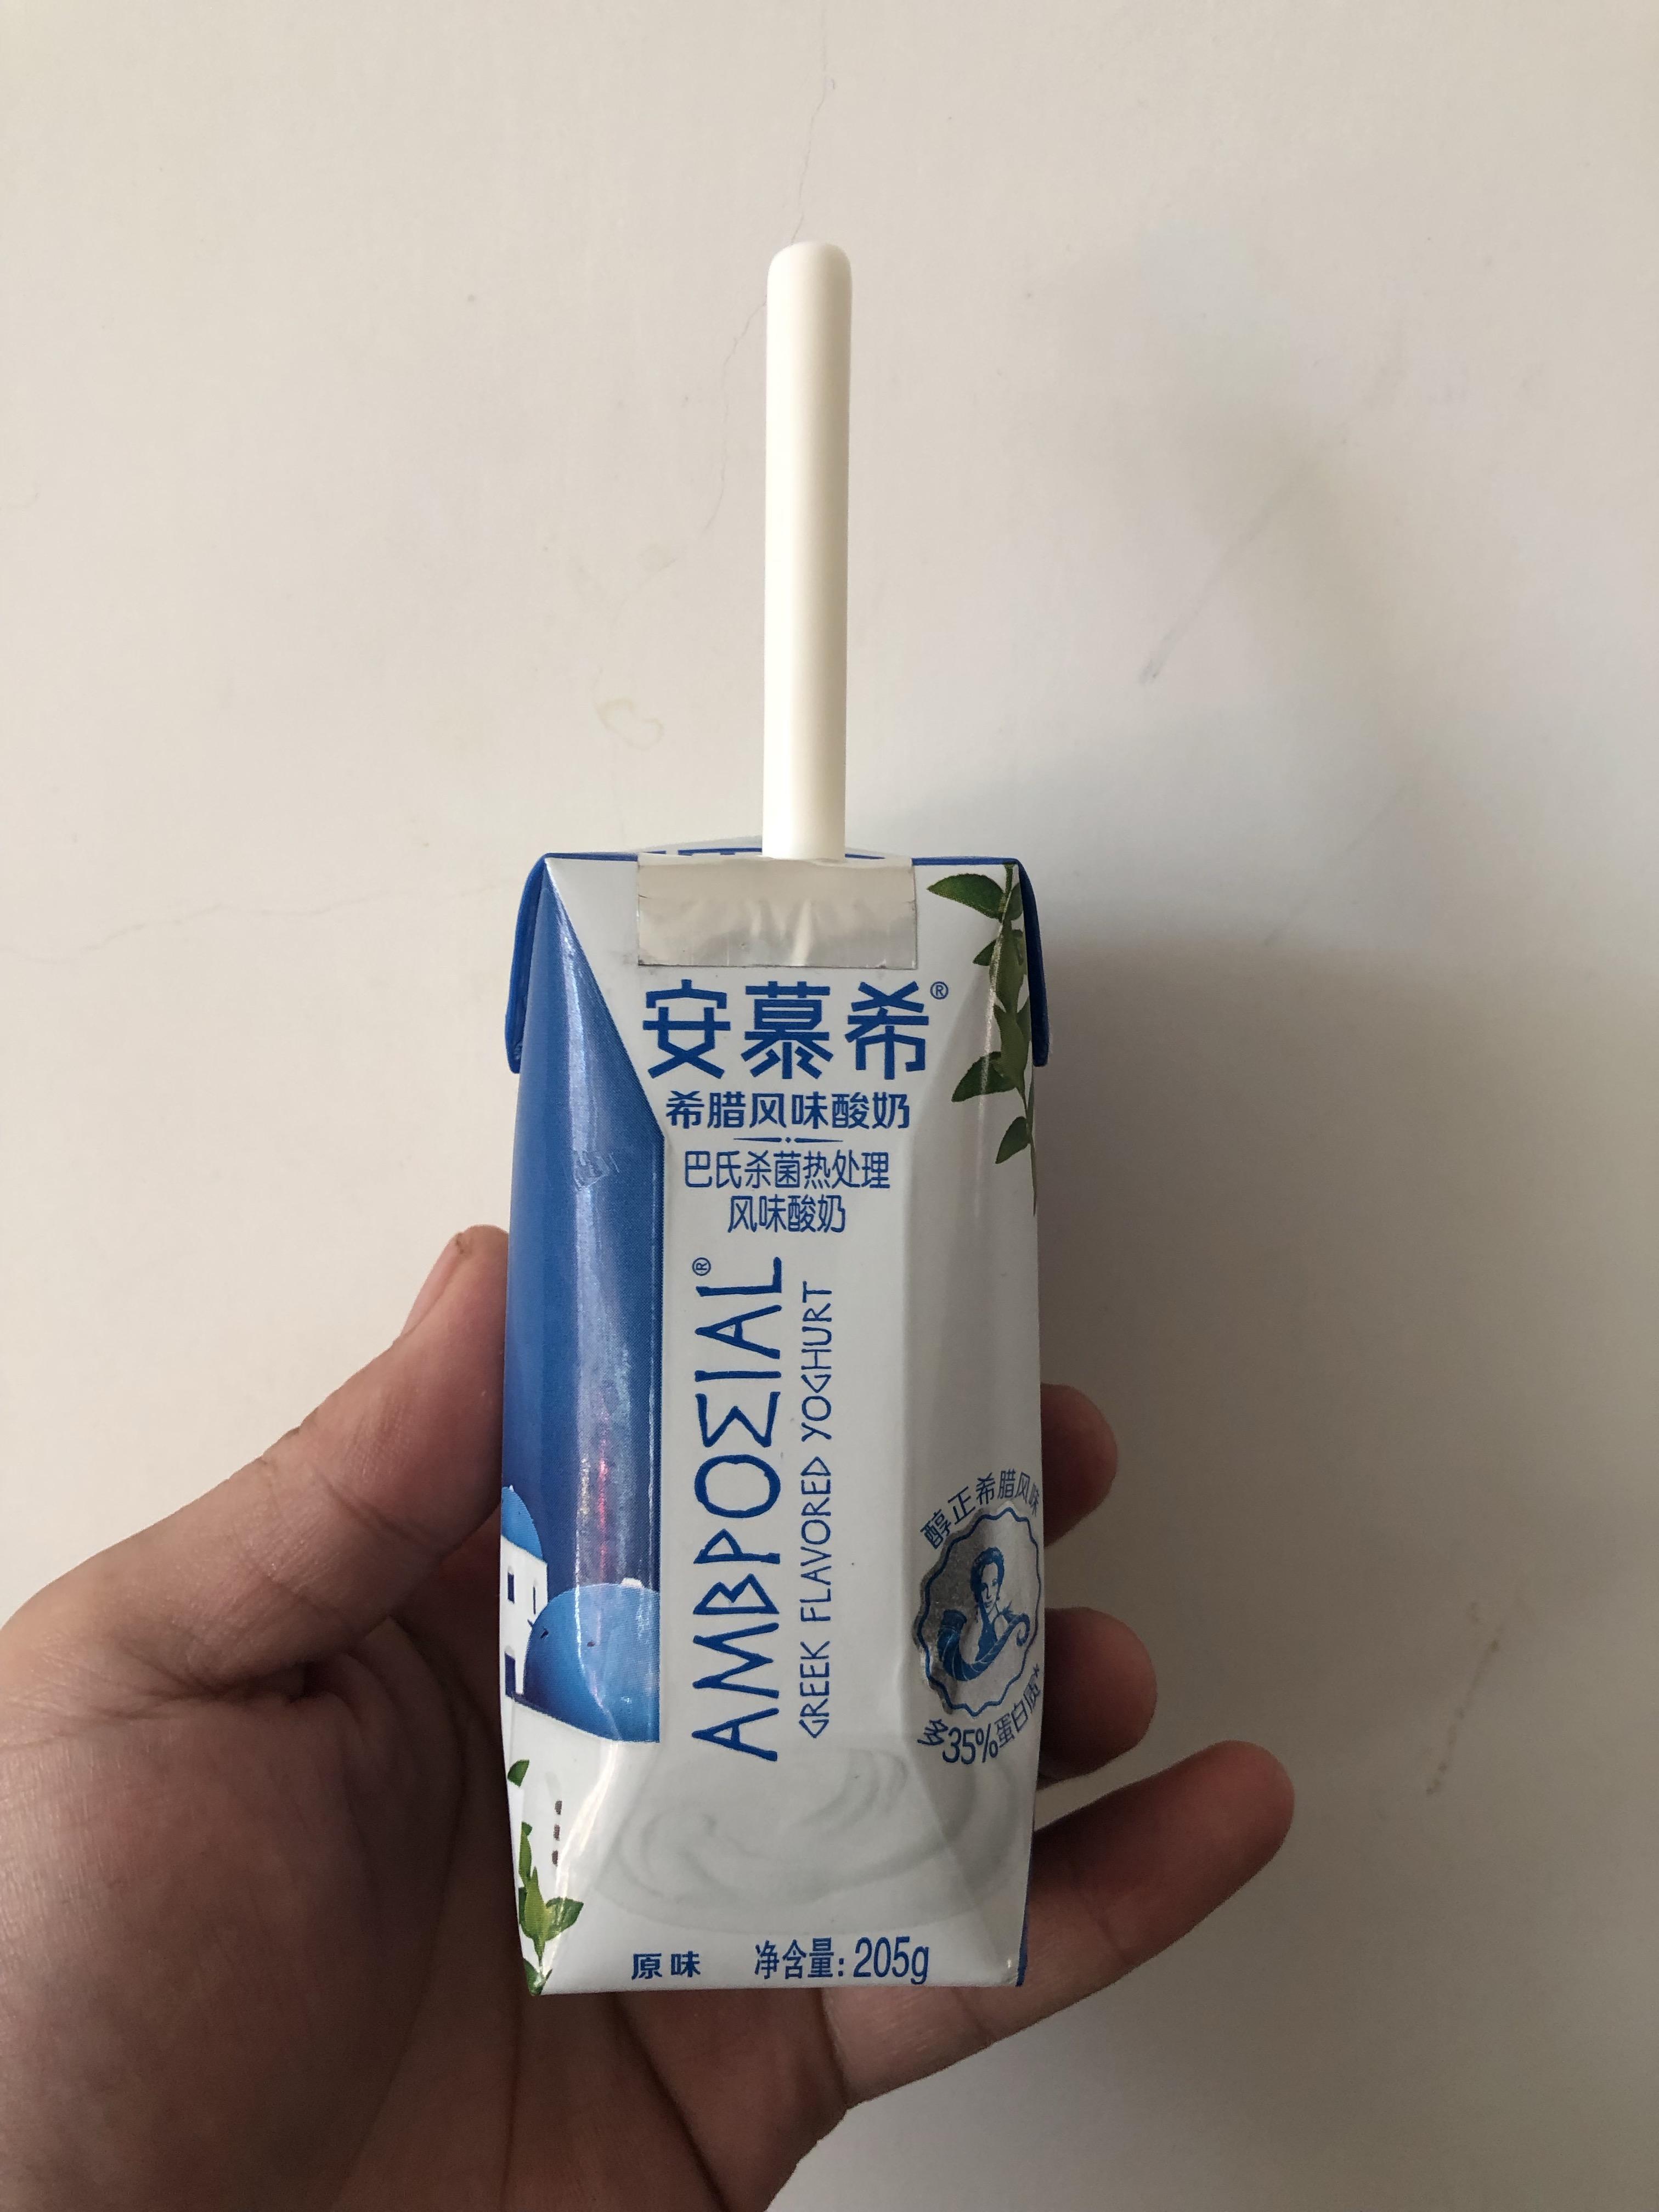 营养酸奶推荐:安慕希风味酸奶饮品,早餐必备的酸奶呀!